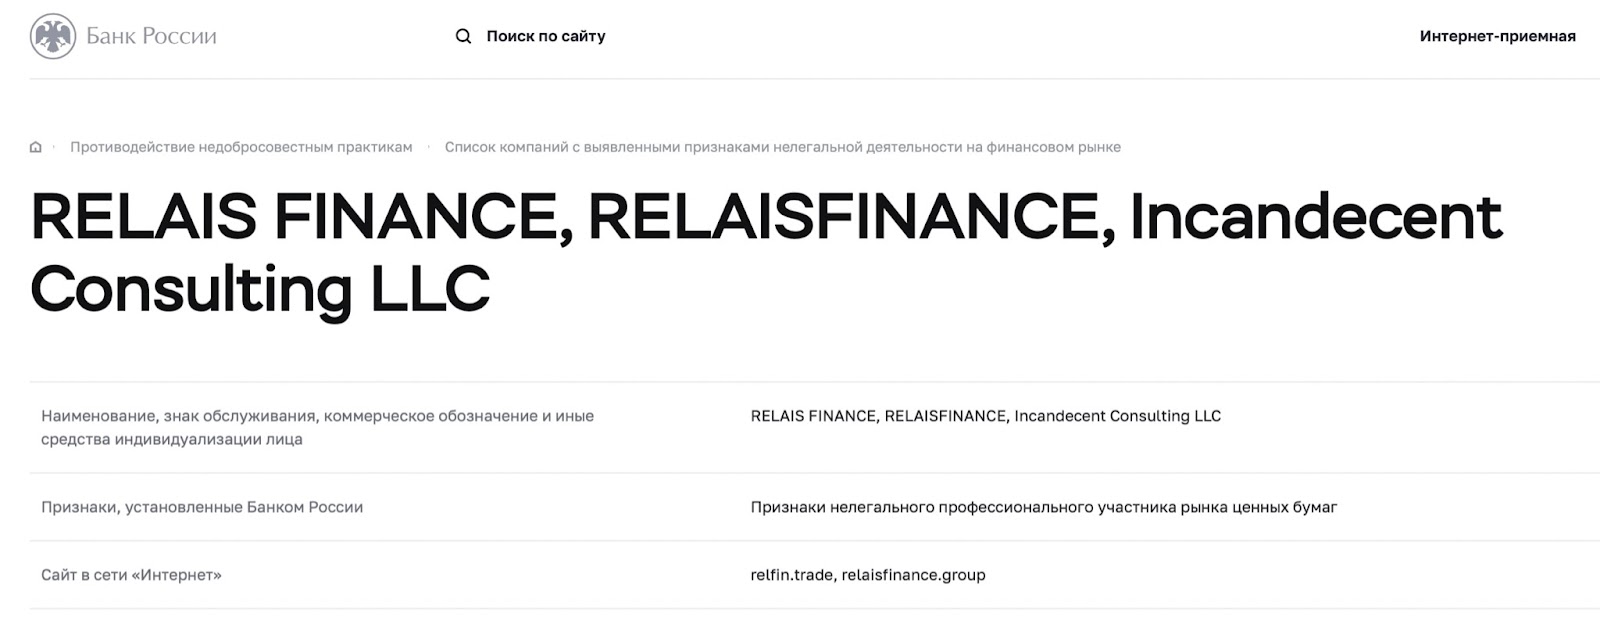 RelaisFinance: отзывы клиентов о работе компании в 2022 году